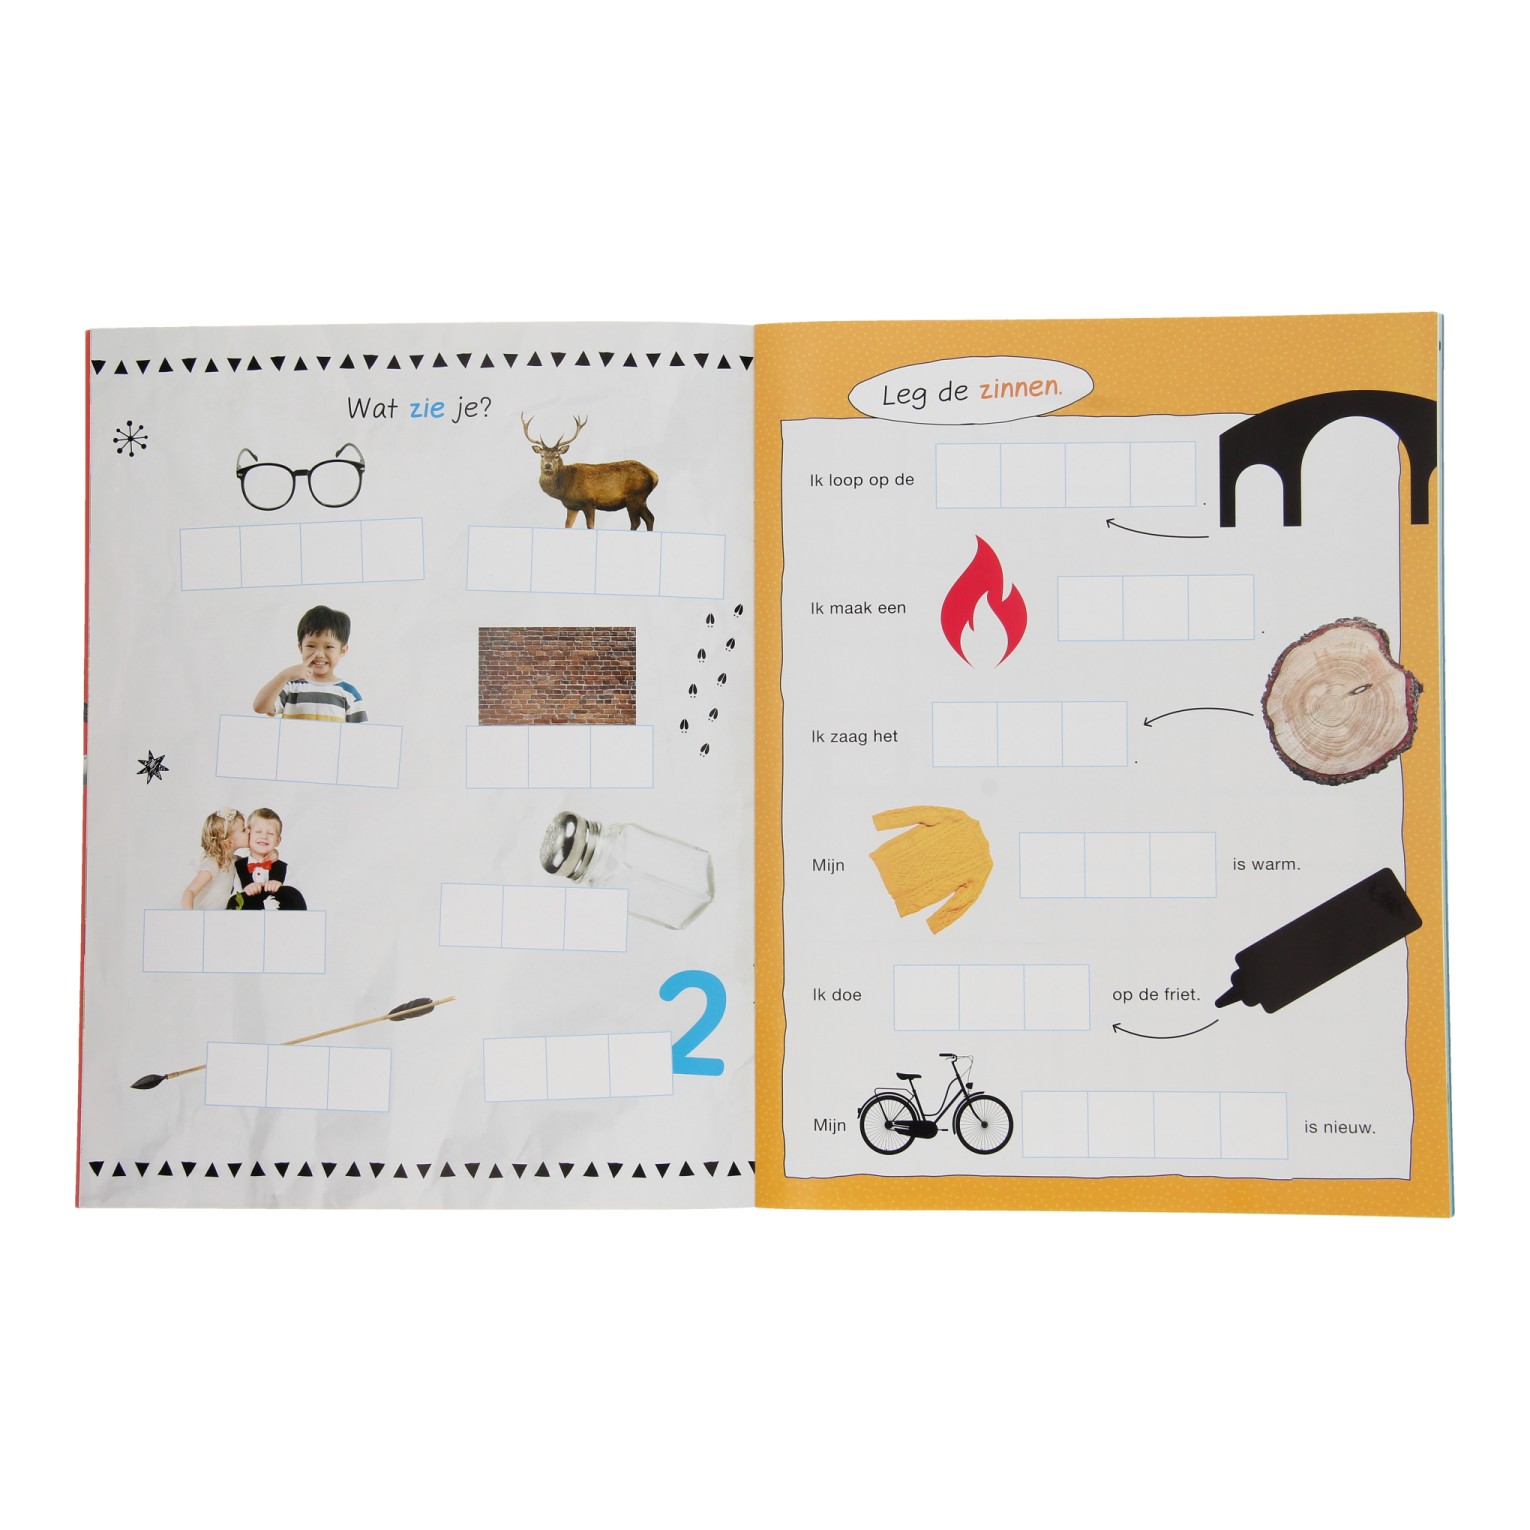 Maan Roos Vis Letter-Stickerboek